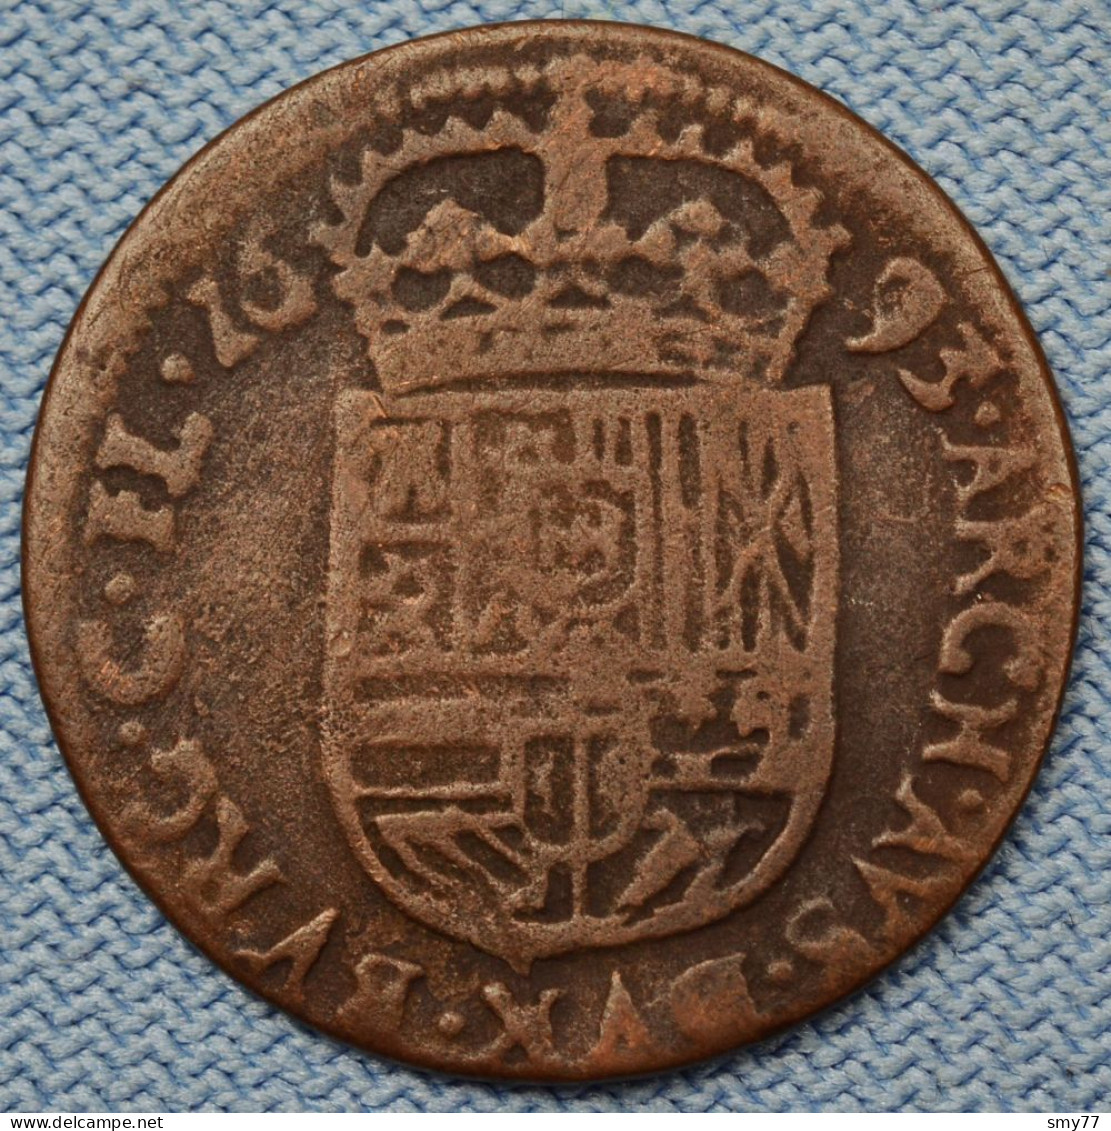 Vlaanderen / Flandre • Liard  / Oort 1693 • Charles II / Karel II • Spanish Netherlands  • [24-566] - 1556-1713 Spanish Netherlands